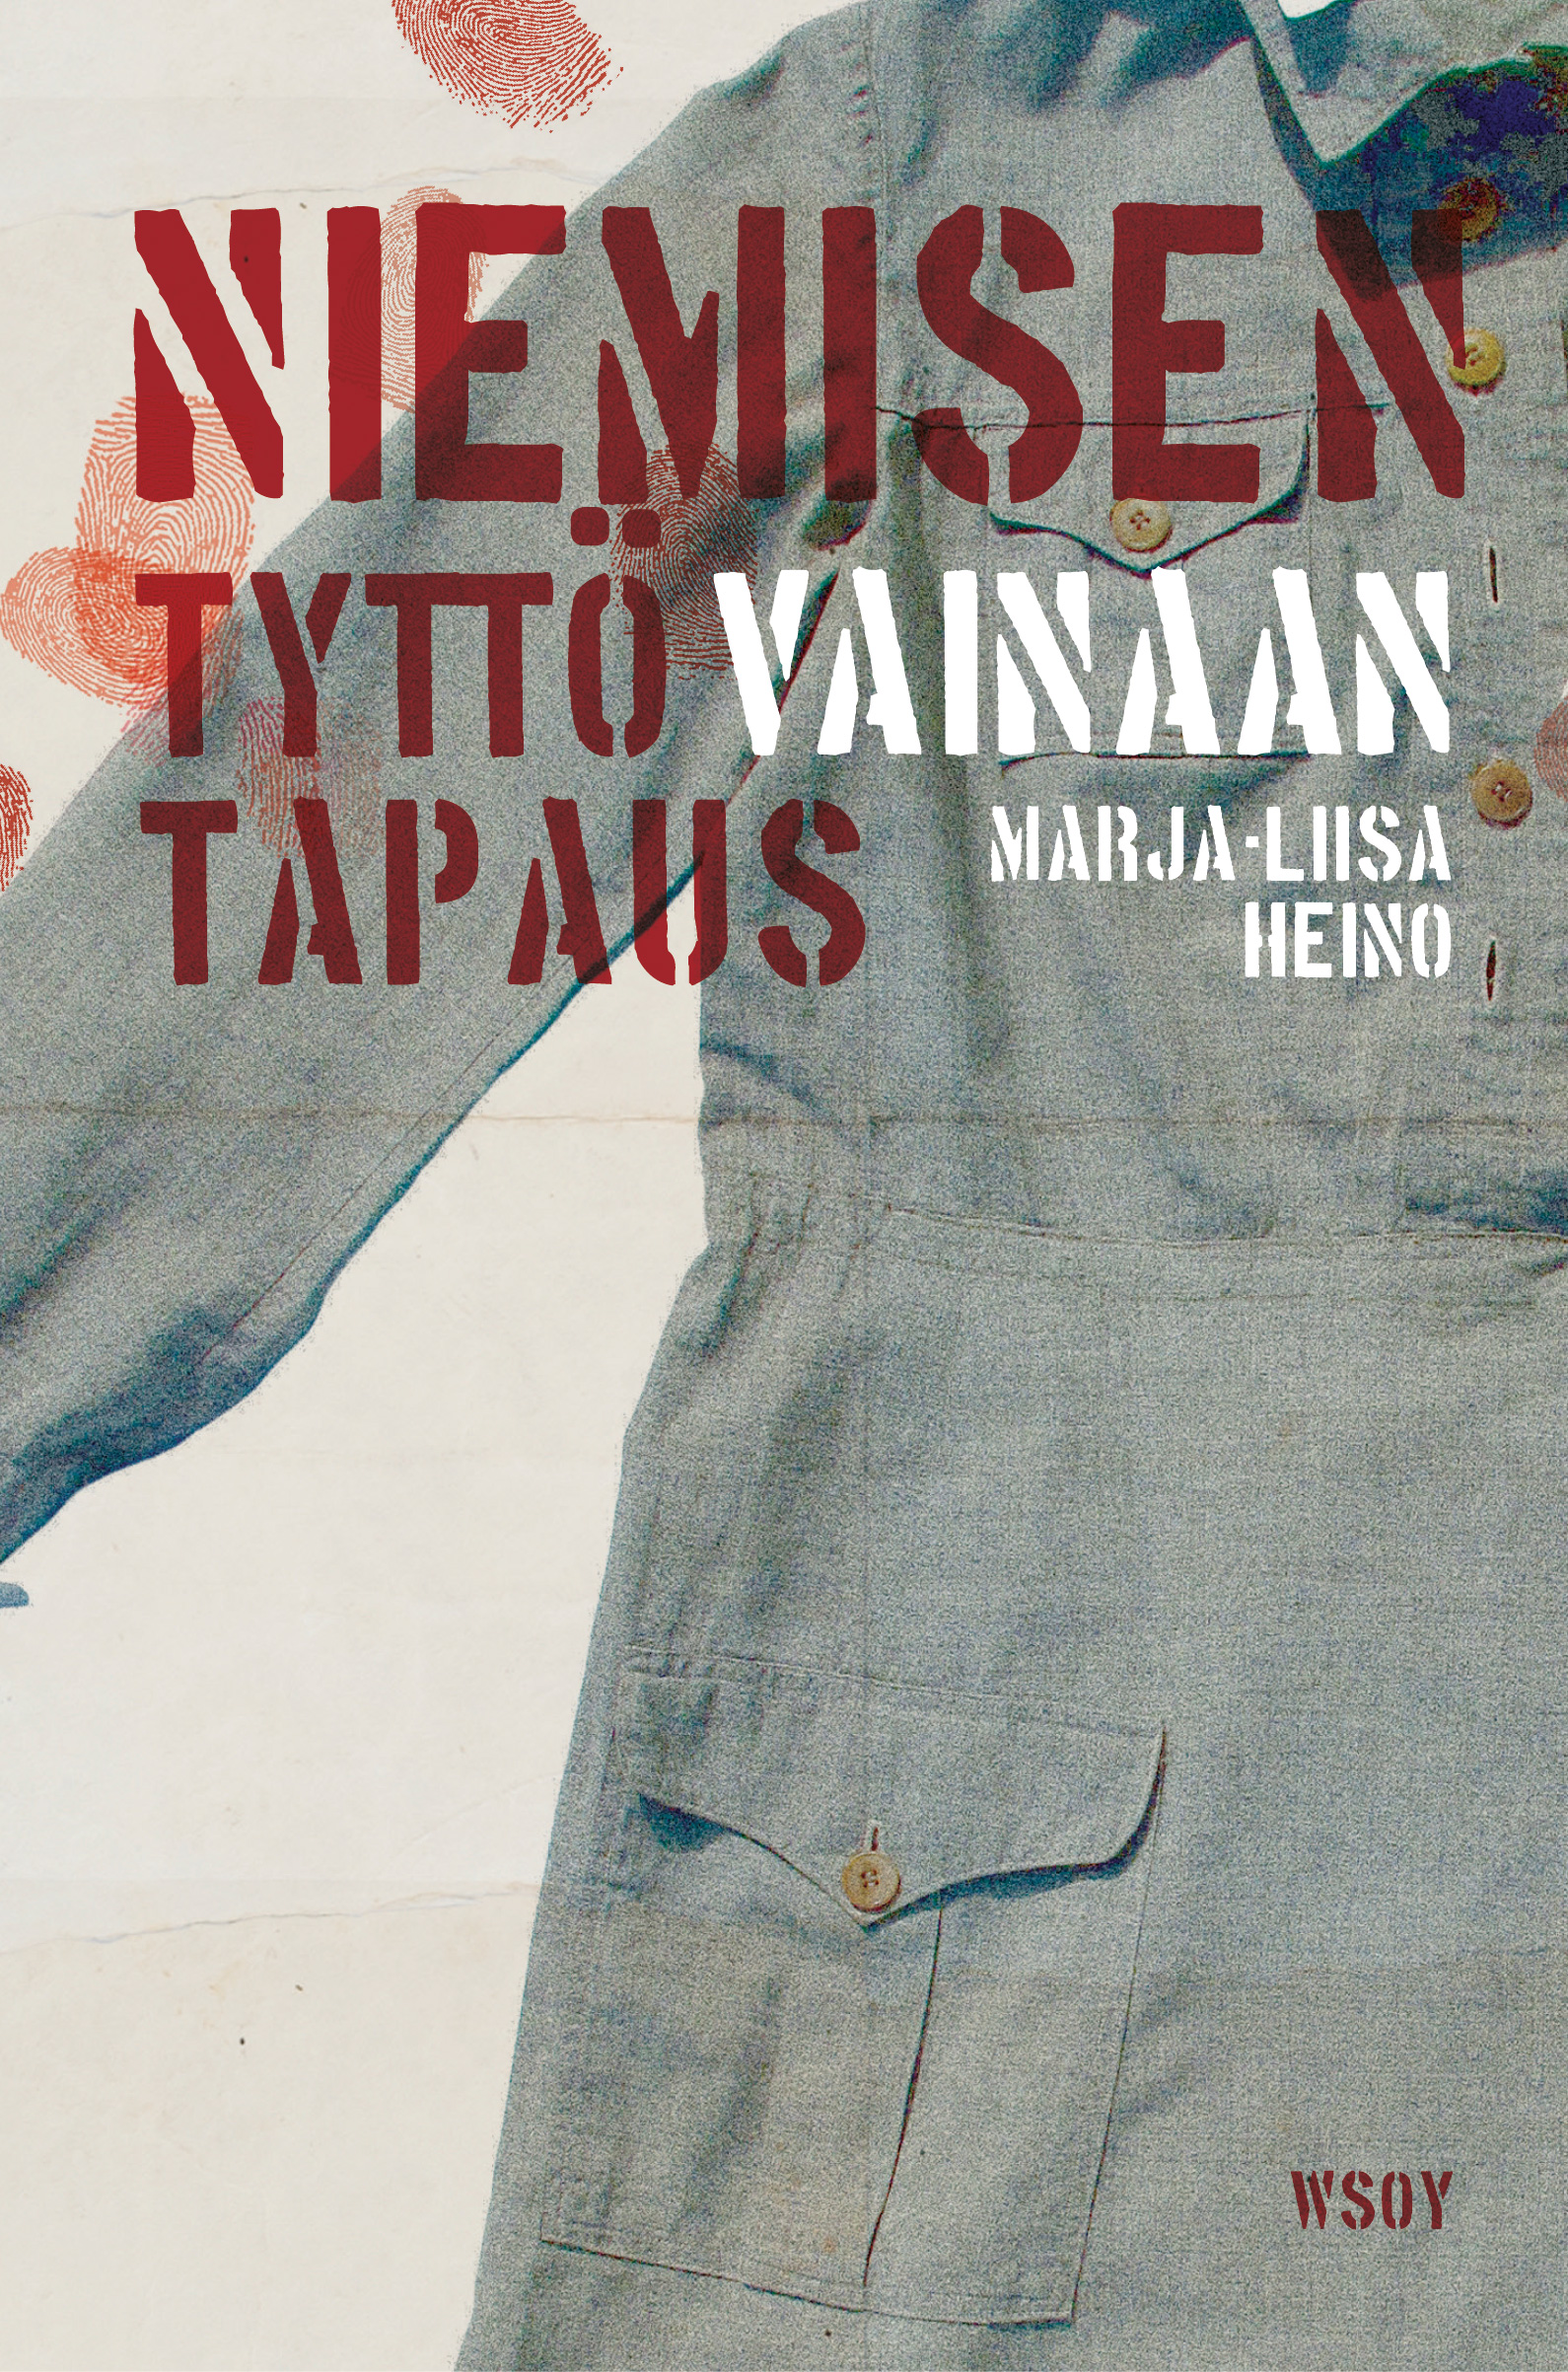 Heino, Marja-Liisa - Niemisen tyttövainaan tapaus, ebook